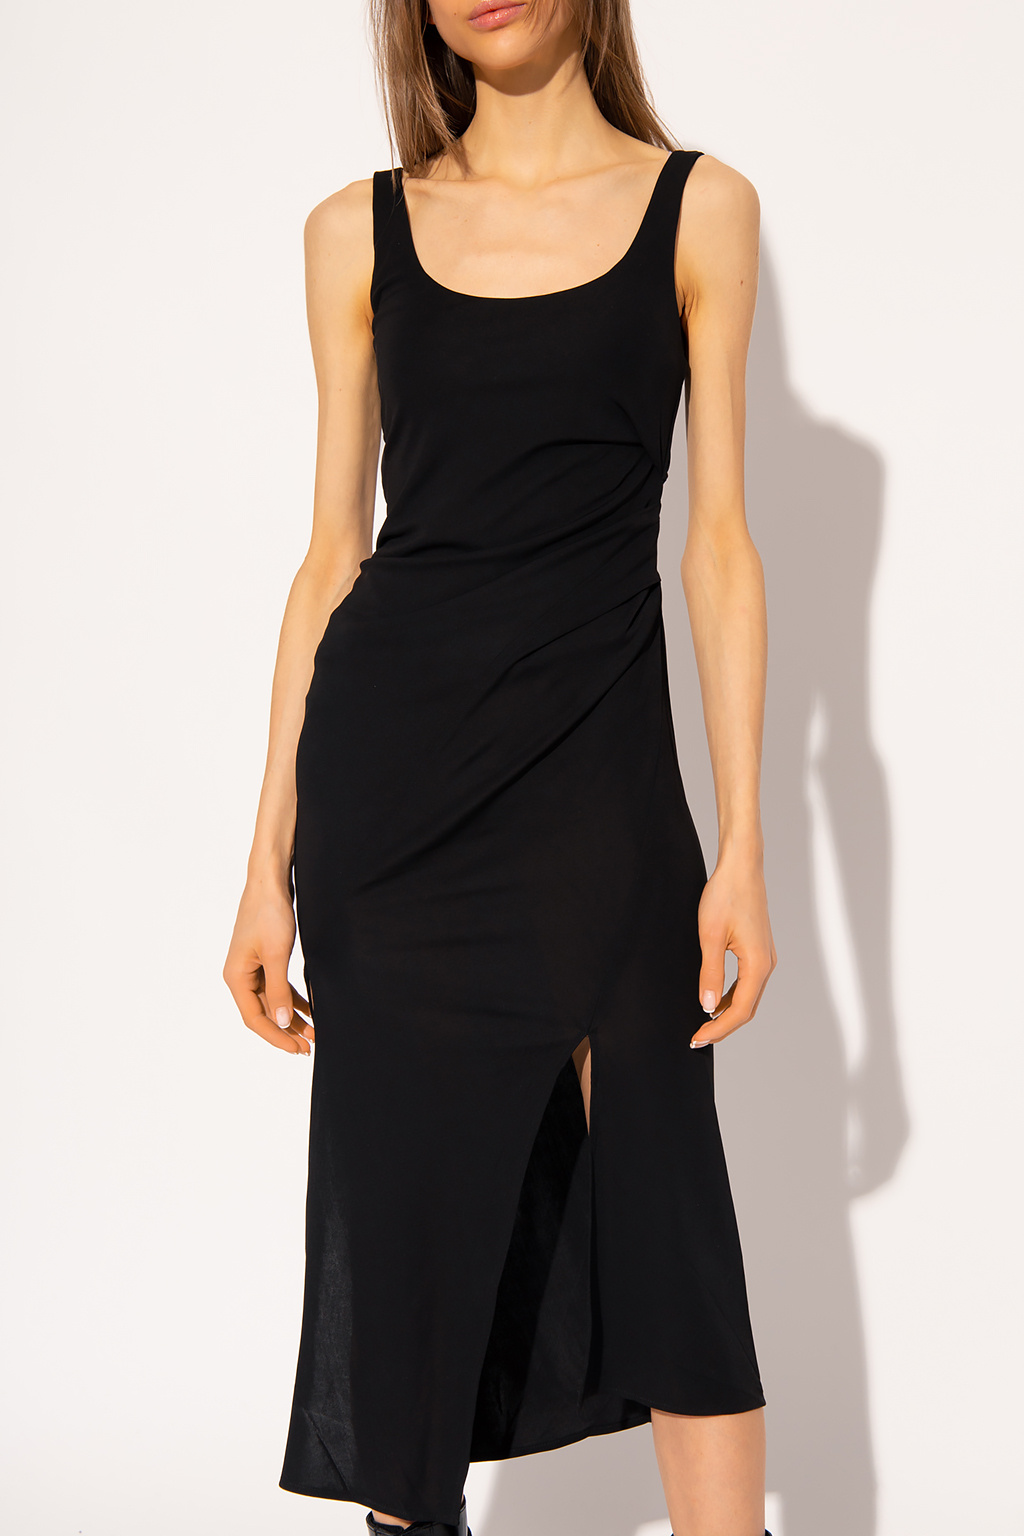 Helmut Lang Asymmetrical slip dress